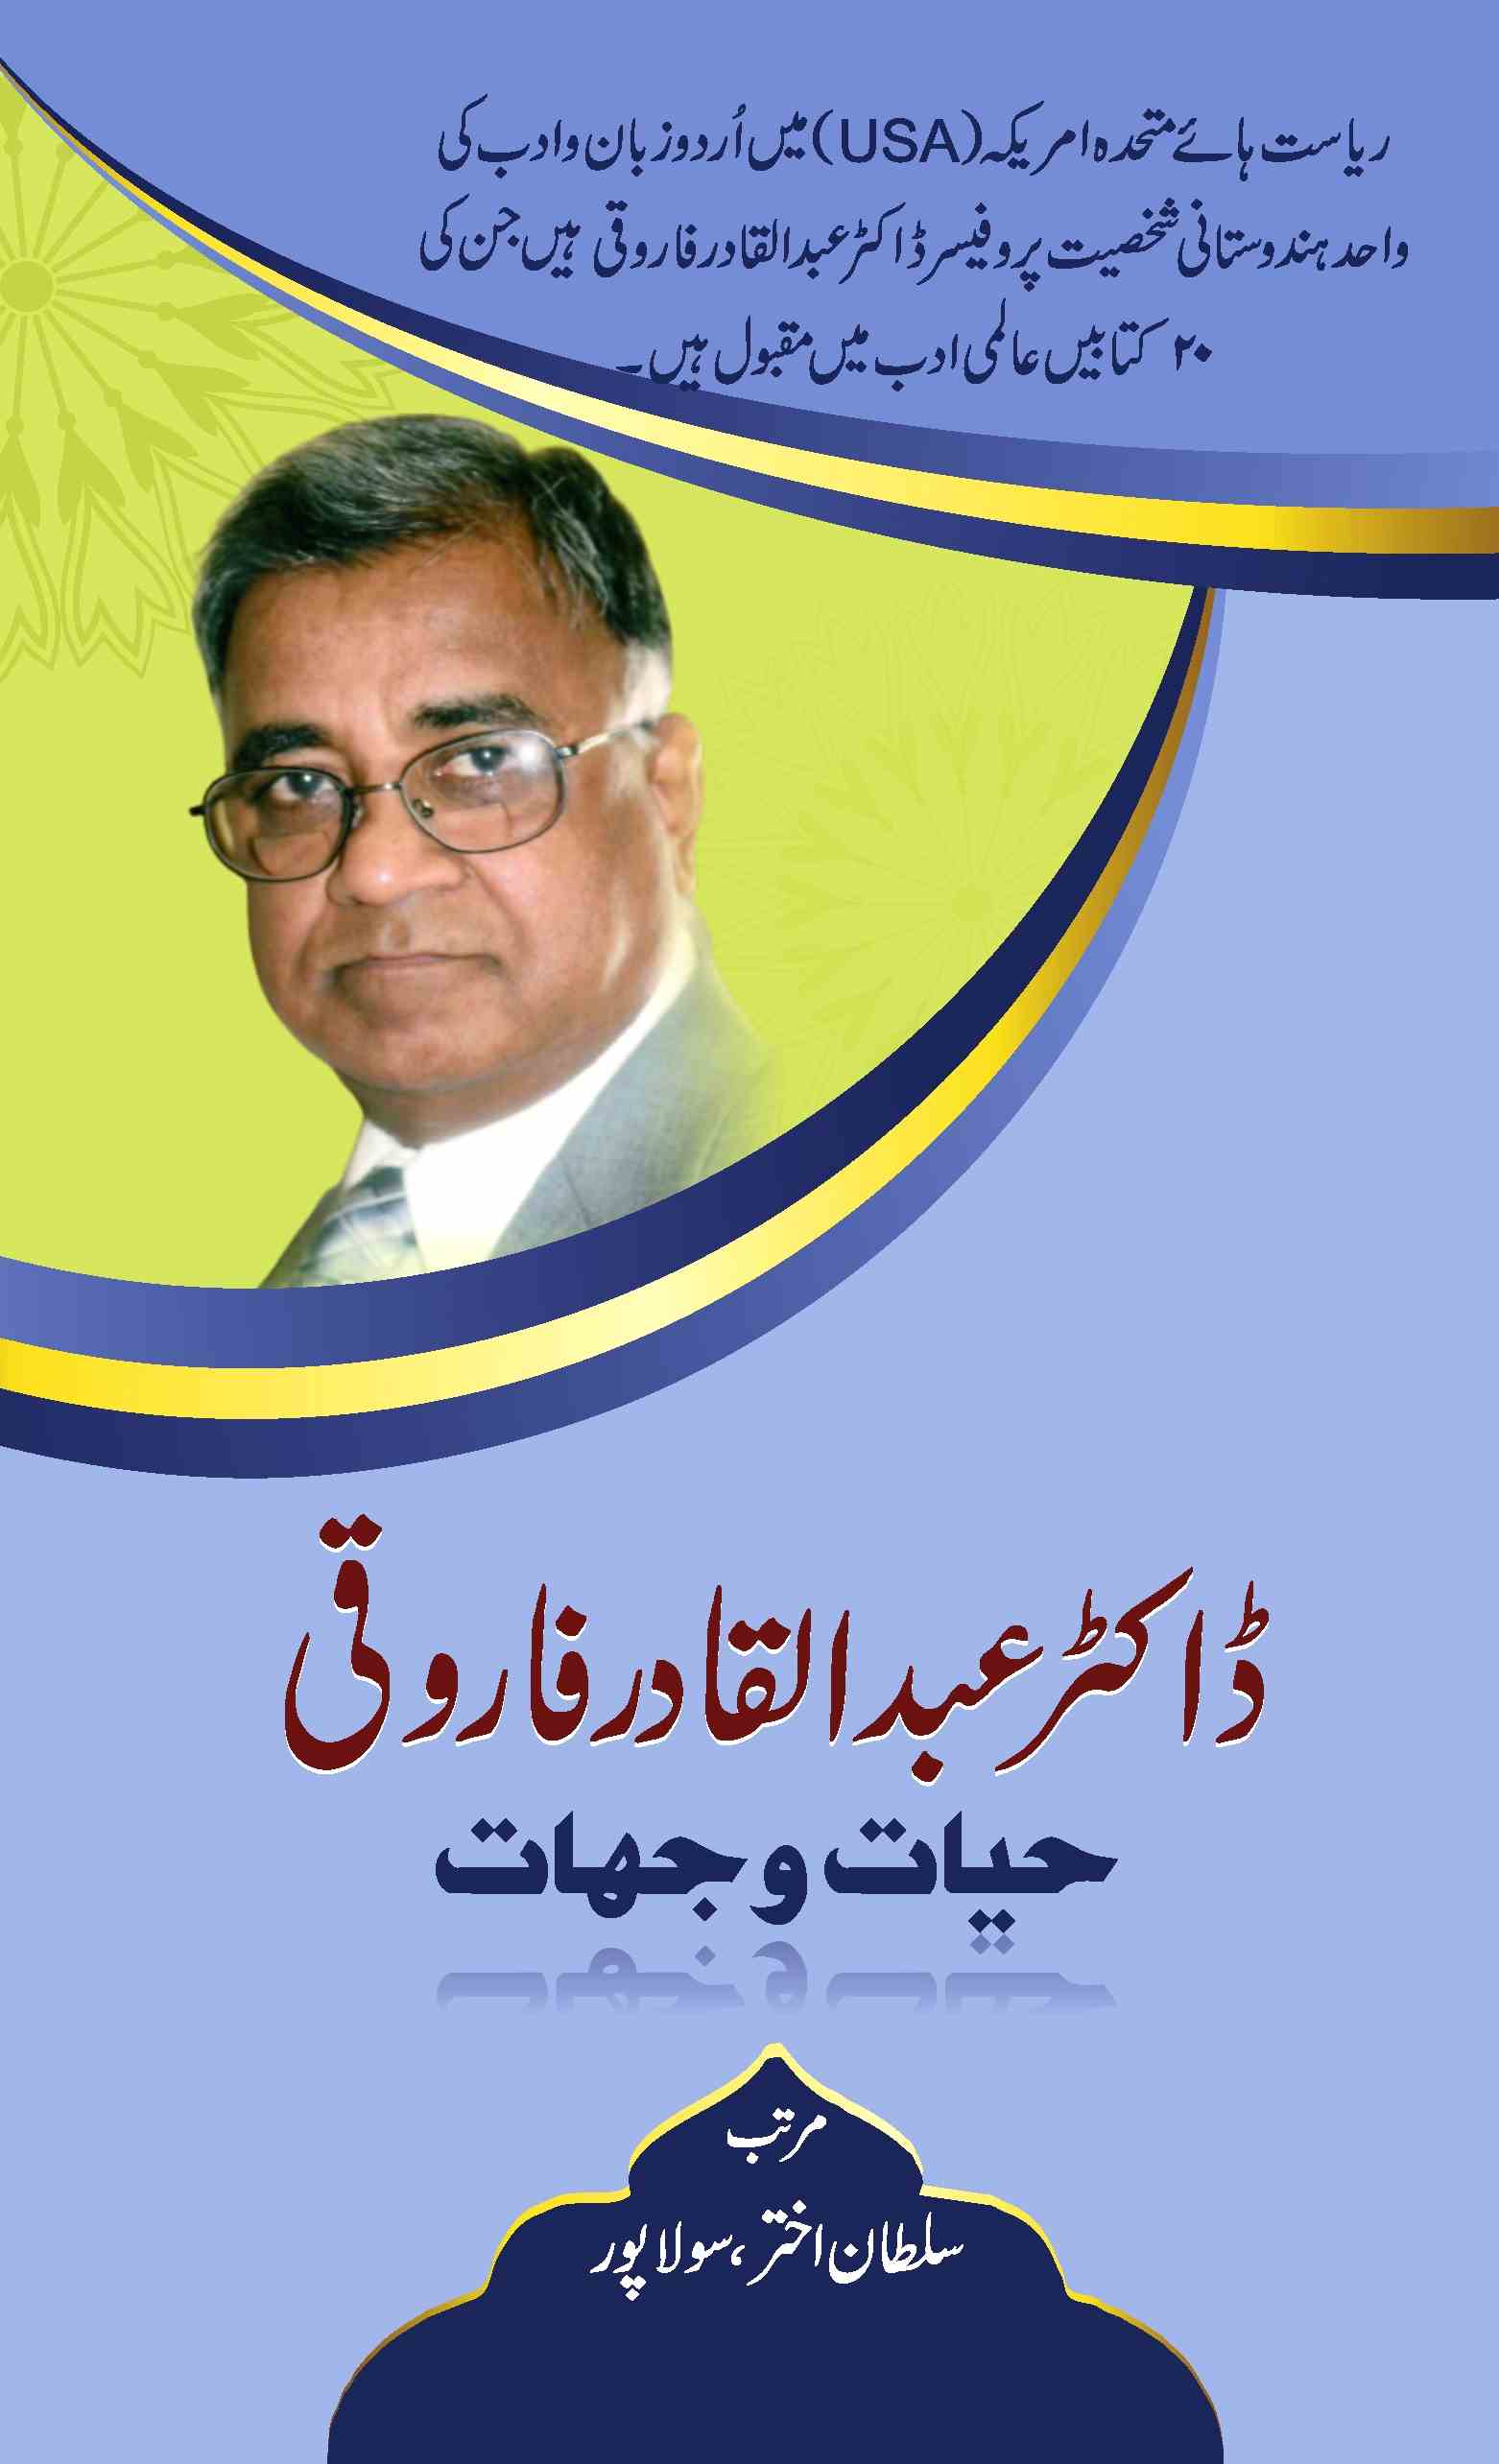 Dr. Abdul Qadir Farooqi